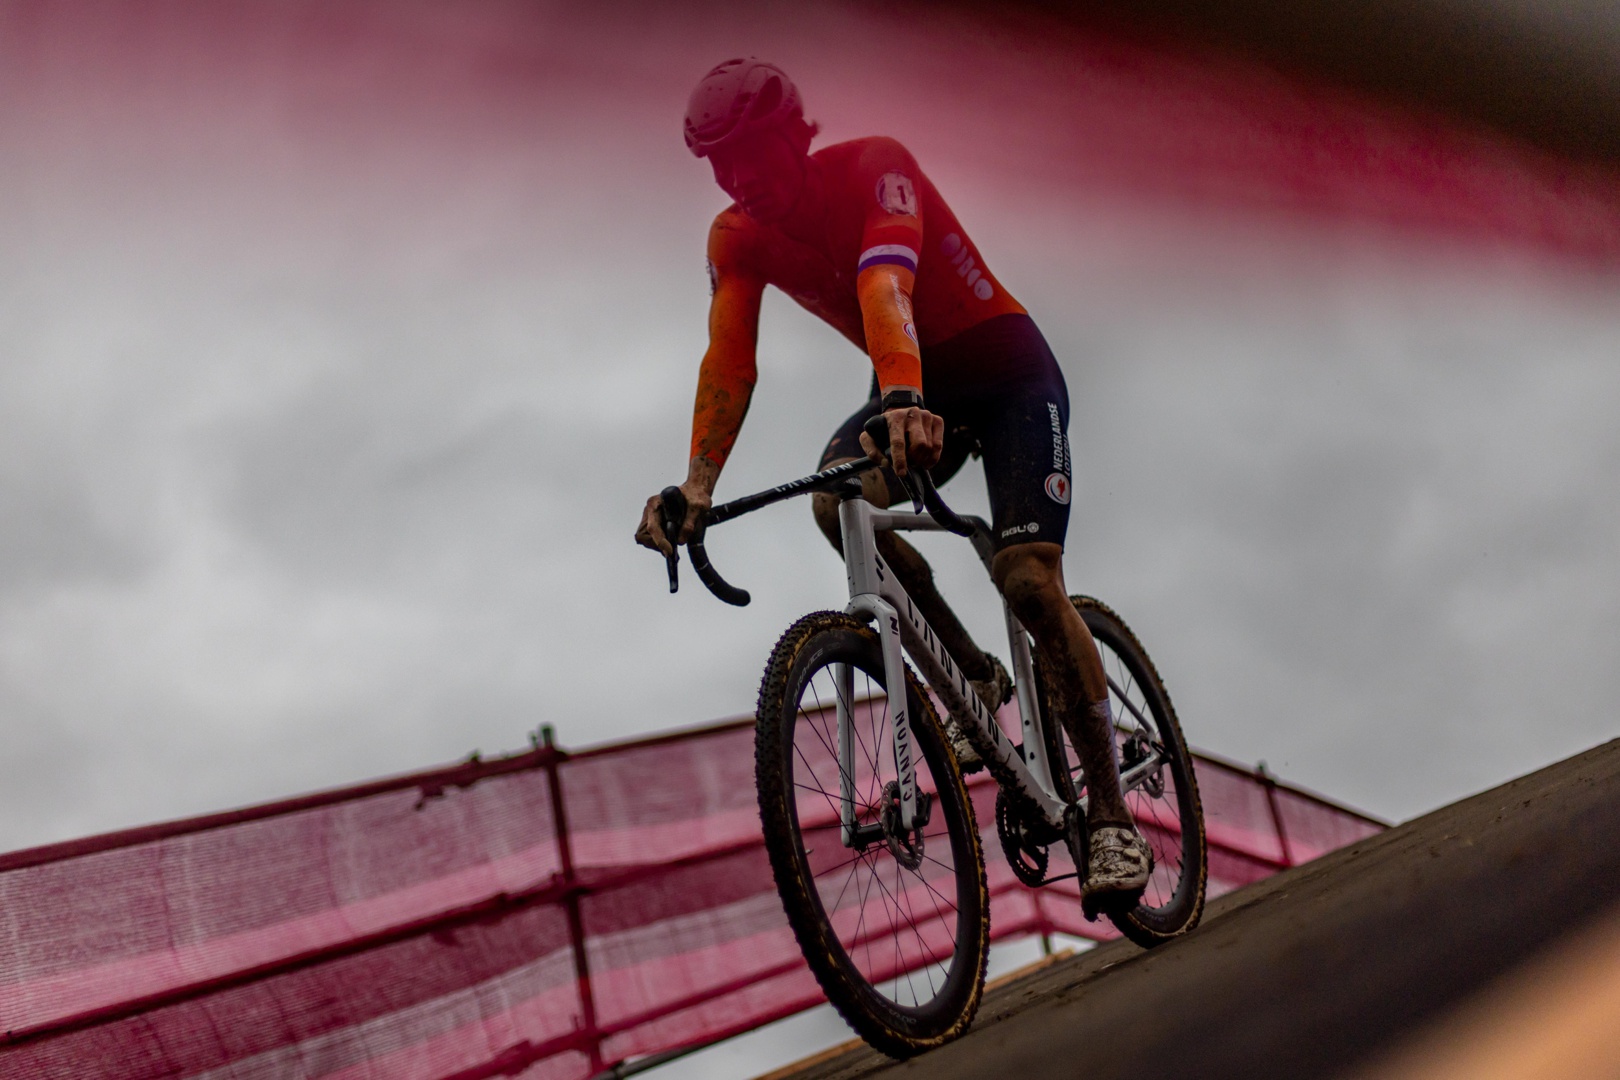 van der poel logra en tabor su sexto título de campeón del mundo de ciclocrós